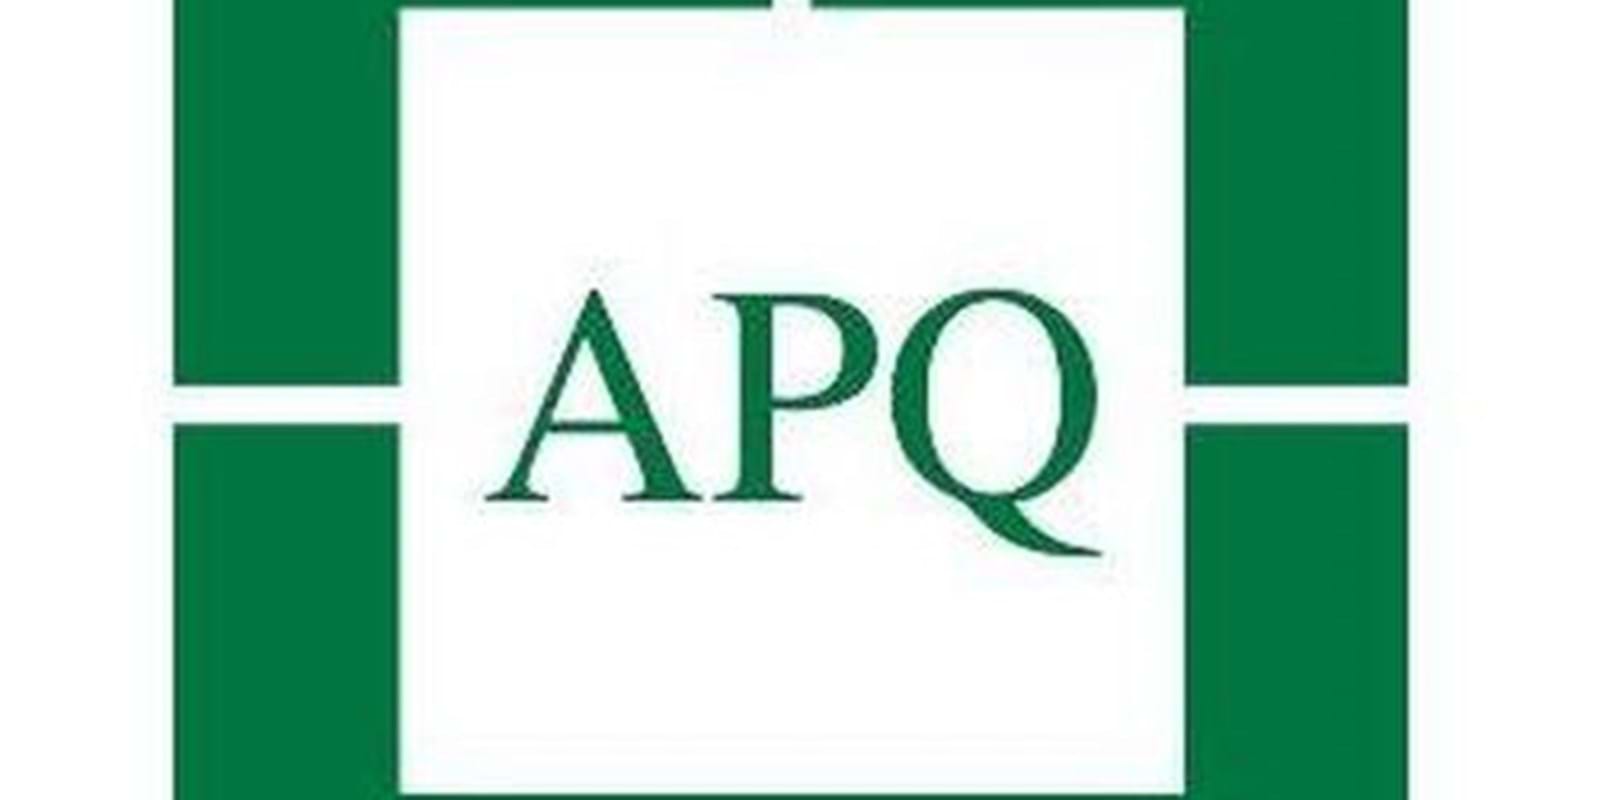 L'APQ va de l'avant avec une nouvelle approche